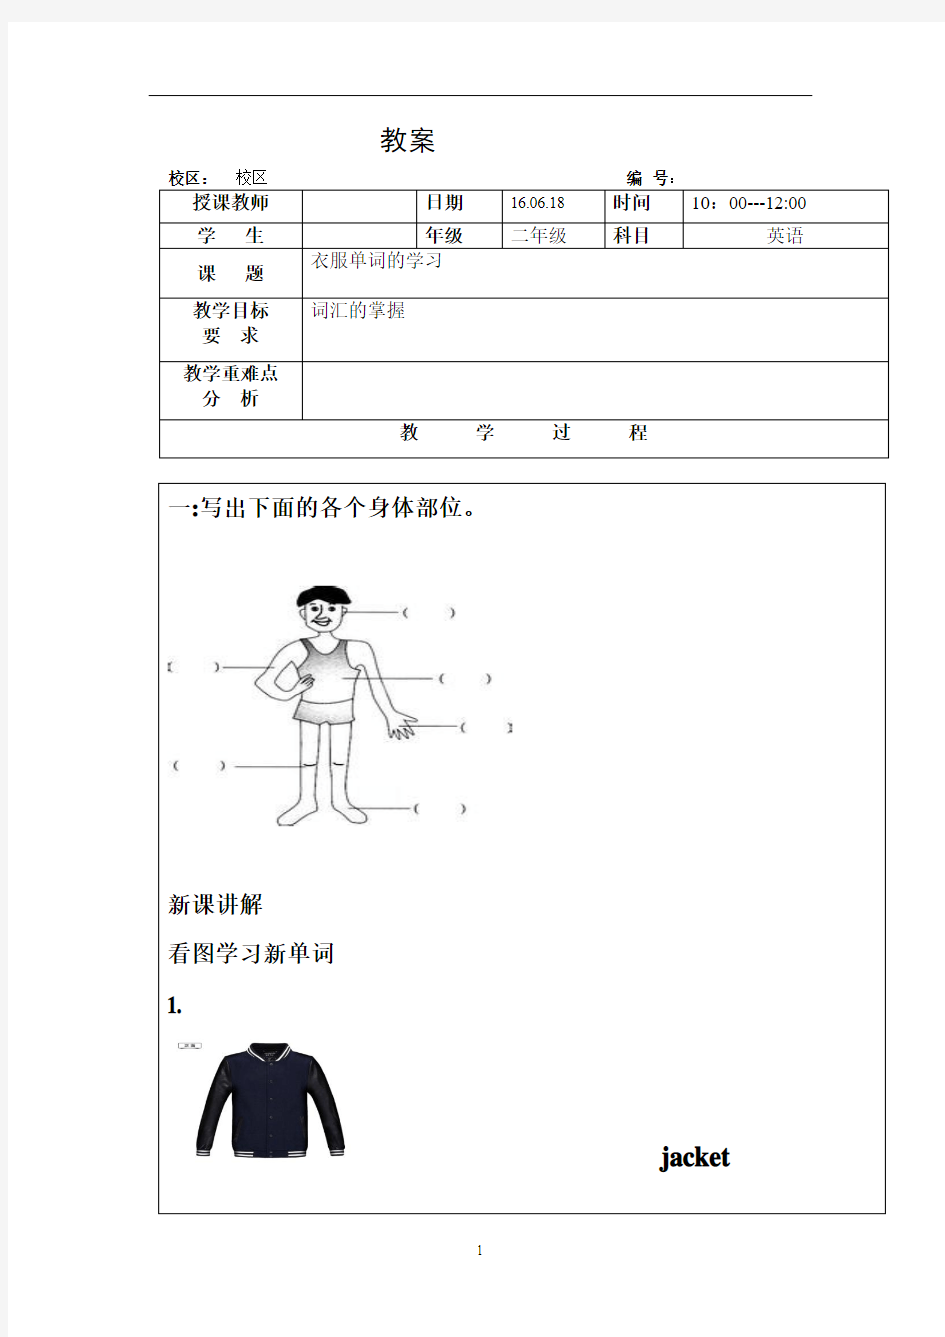 小学学习服装类英语教案 CLOTHES(13)  -